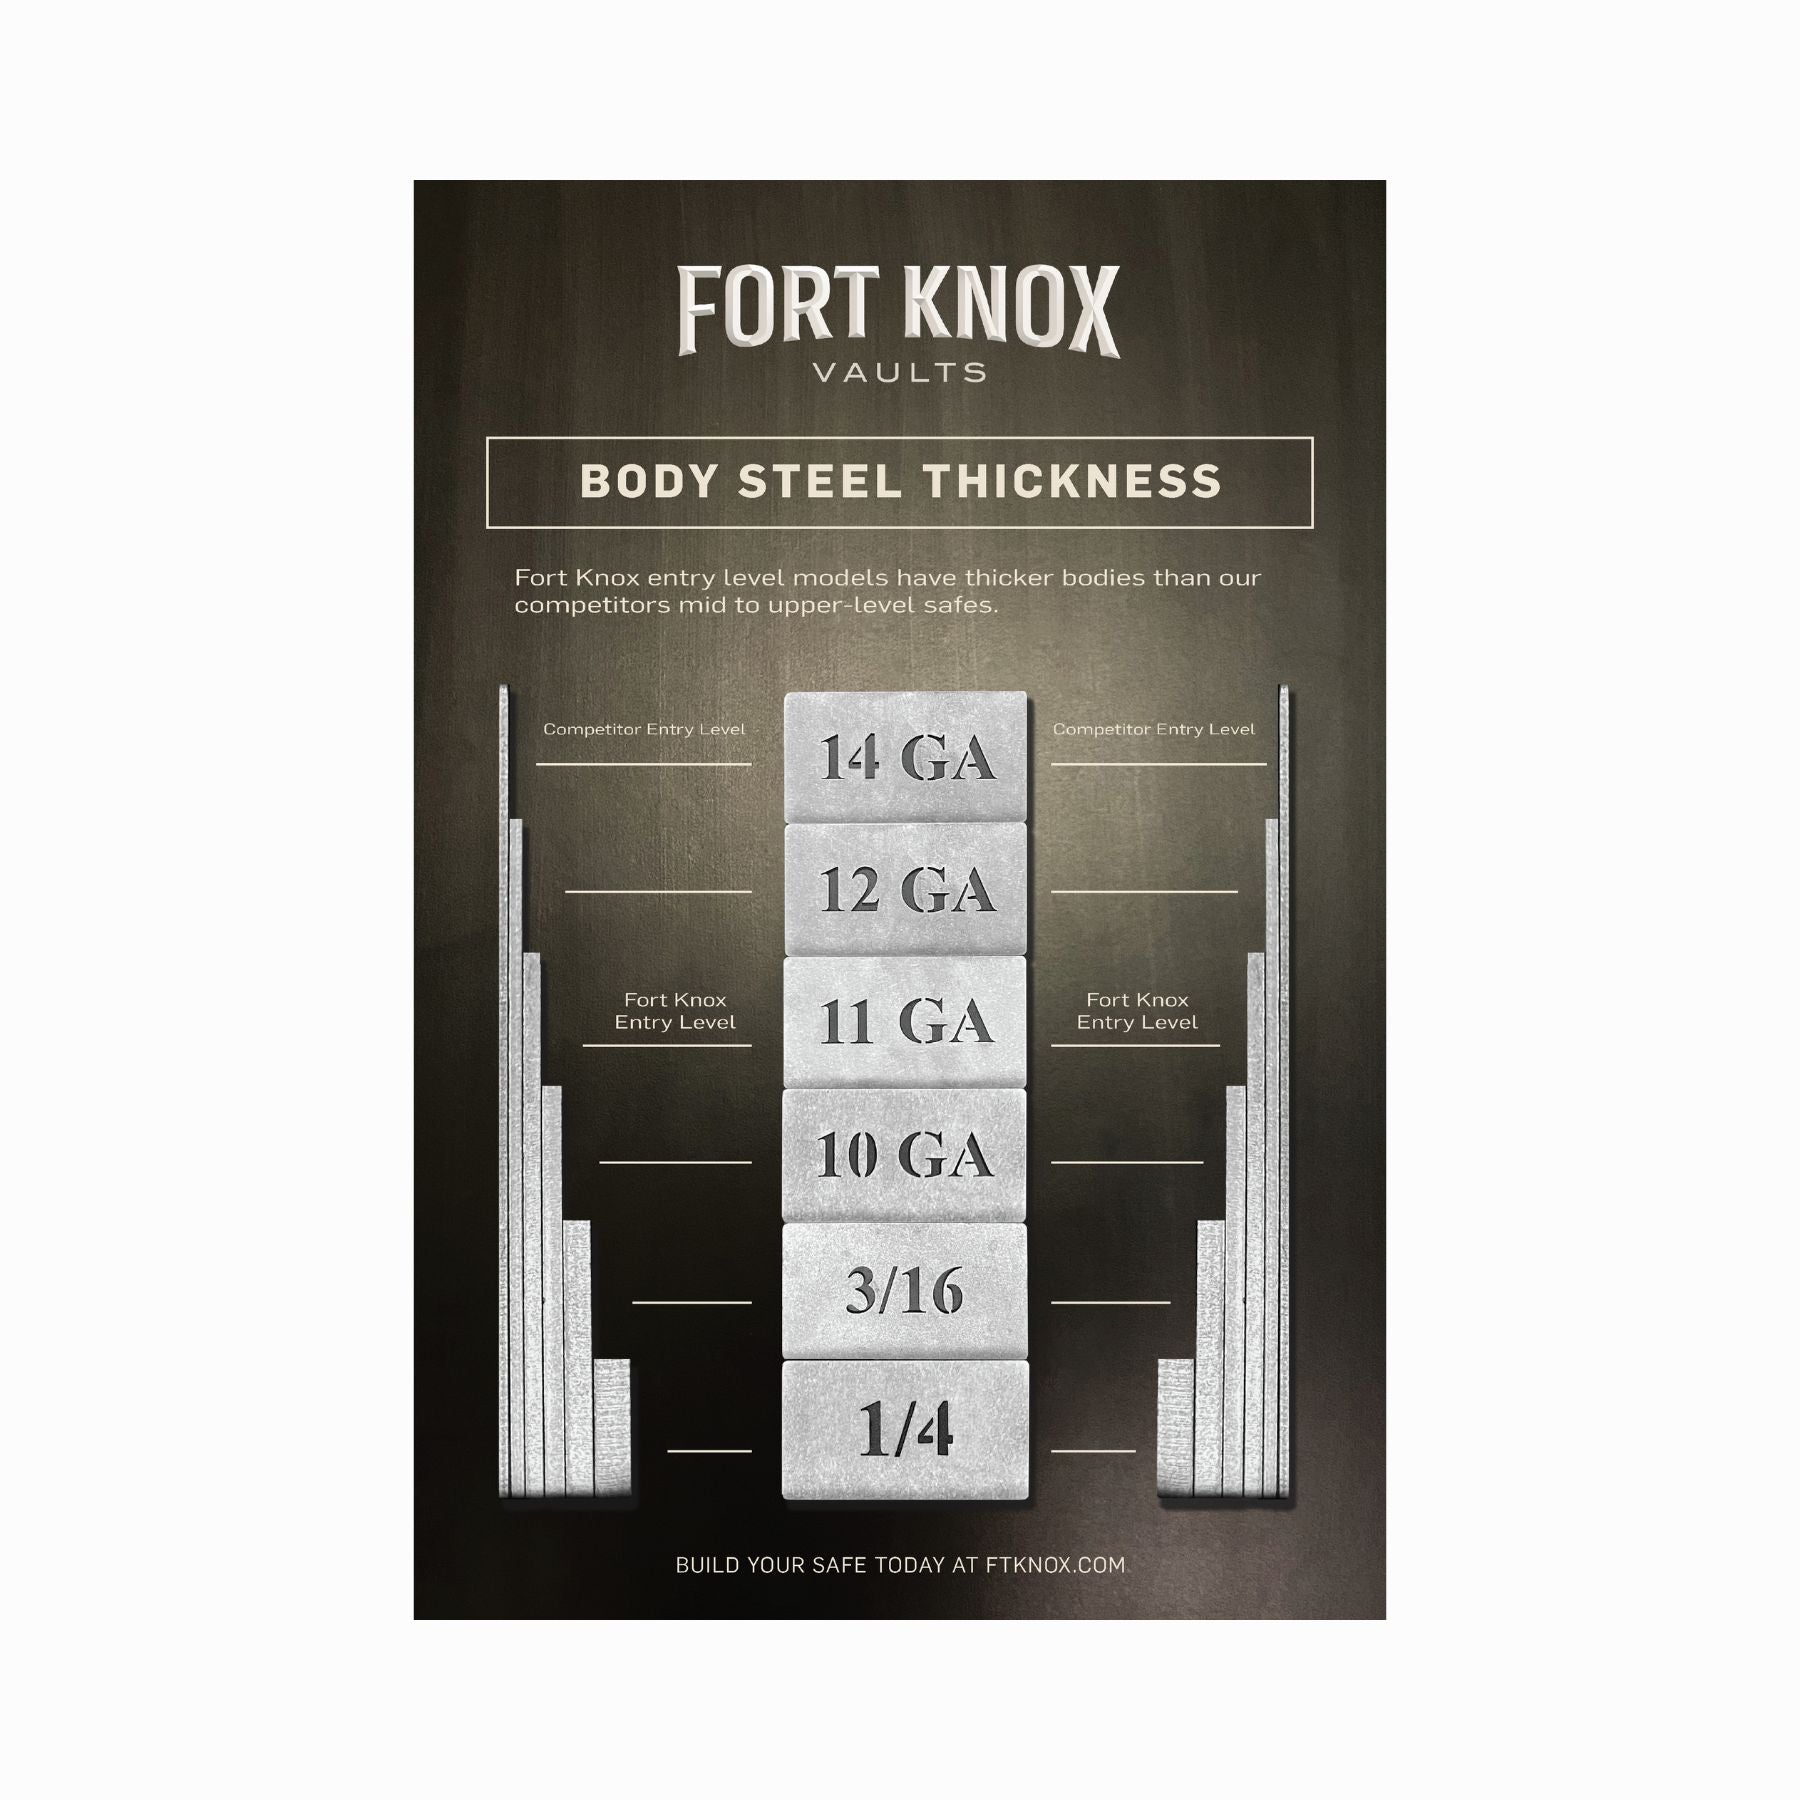 Fort Knox Executive 7241 Gun Safe